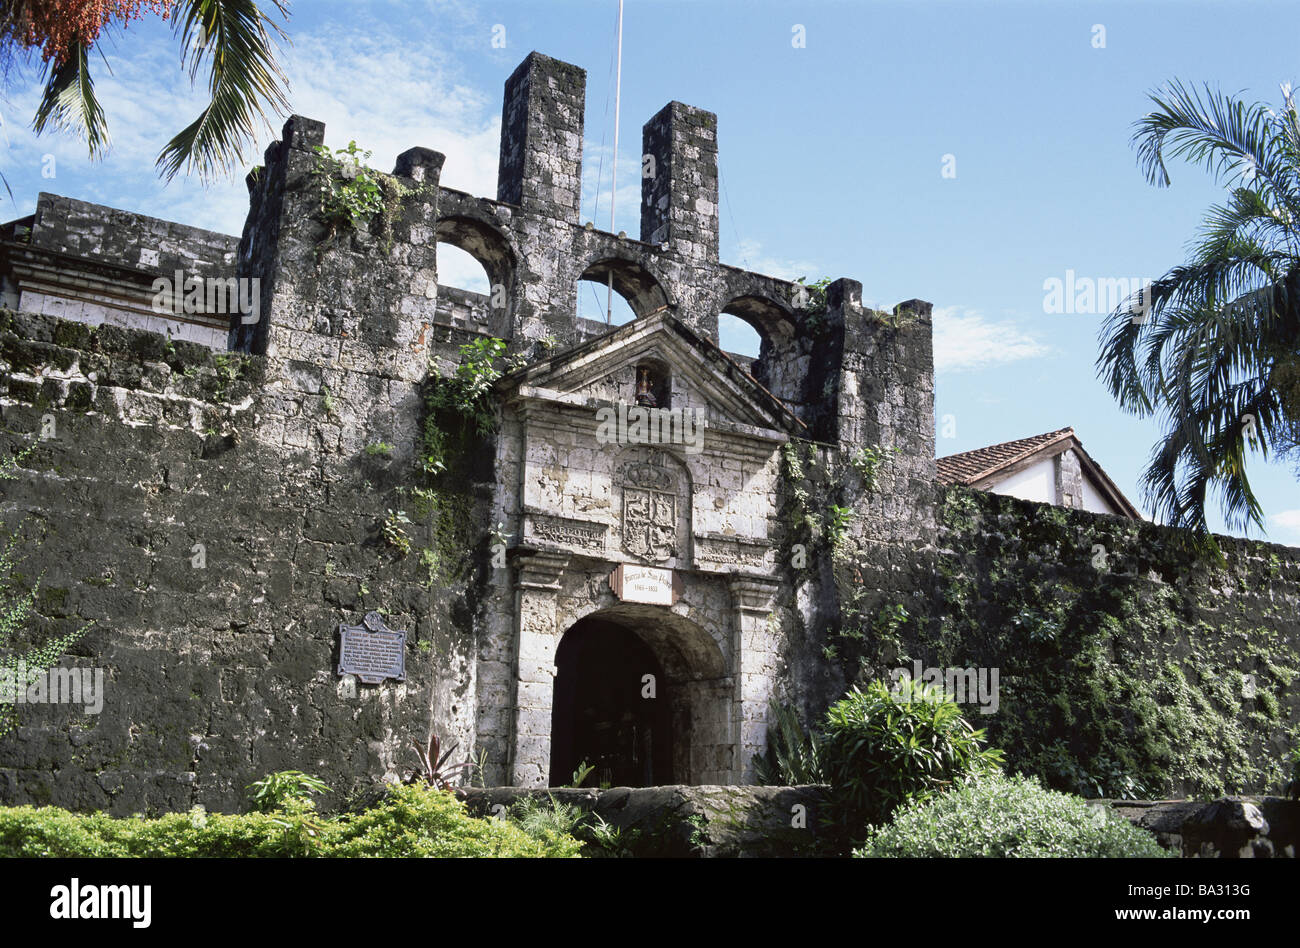 Philippinen Insel Cebu Cebu Stadt Fort San Pedro Asien Visayainseln Cebu-Stadt Ziel aus den Augen Wahrzeichen Architektur Stockfoto